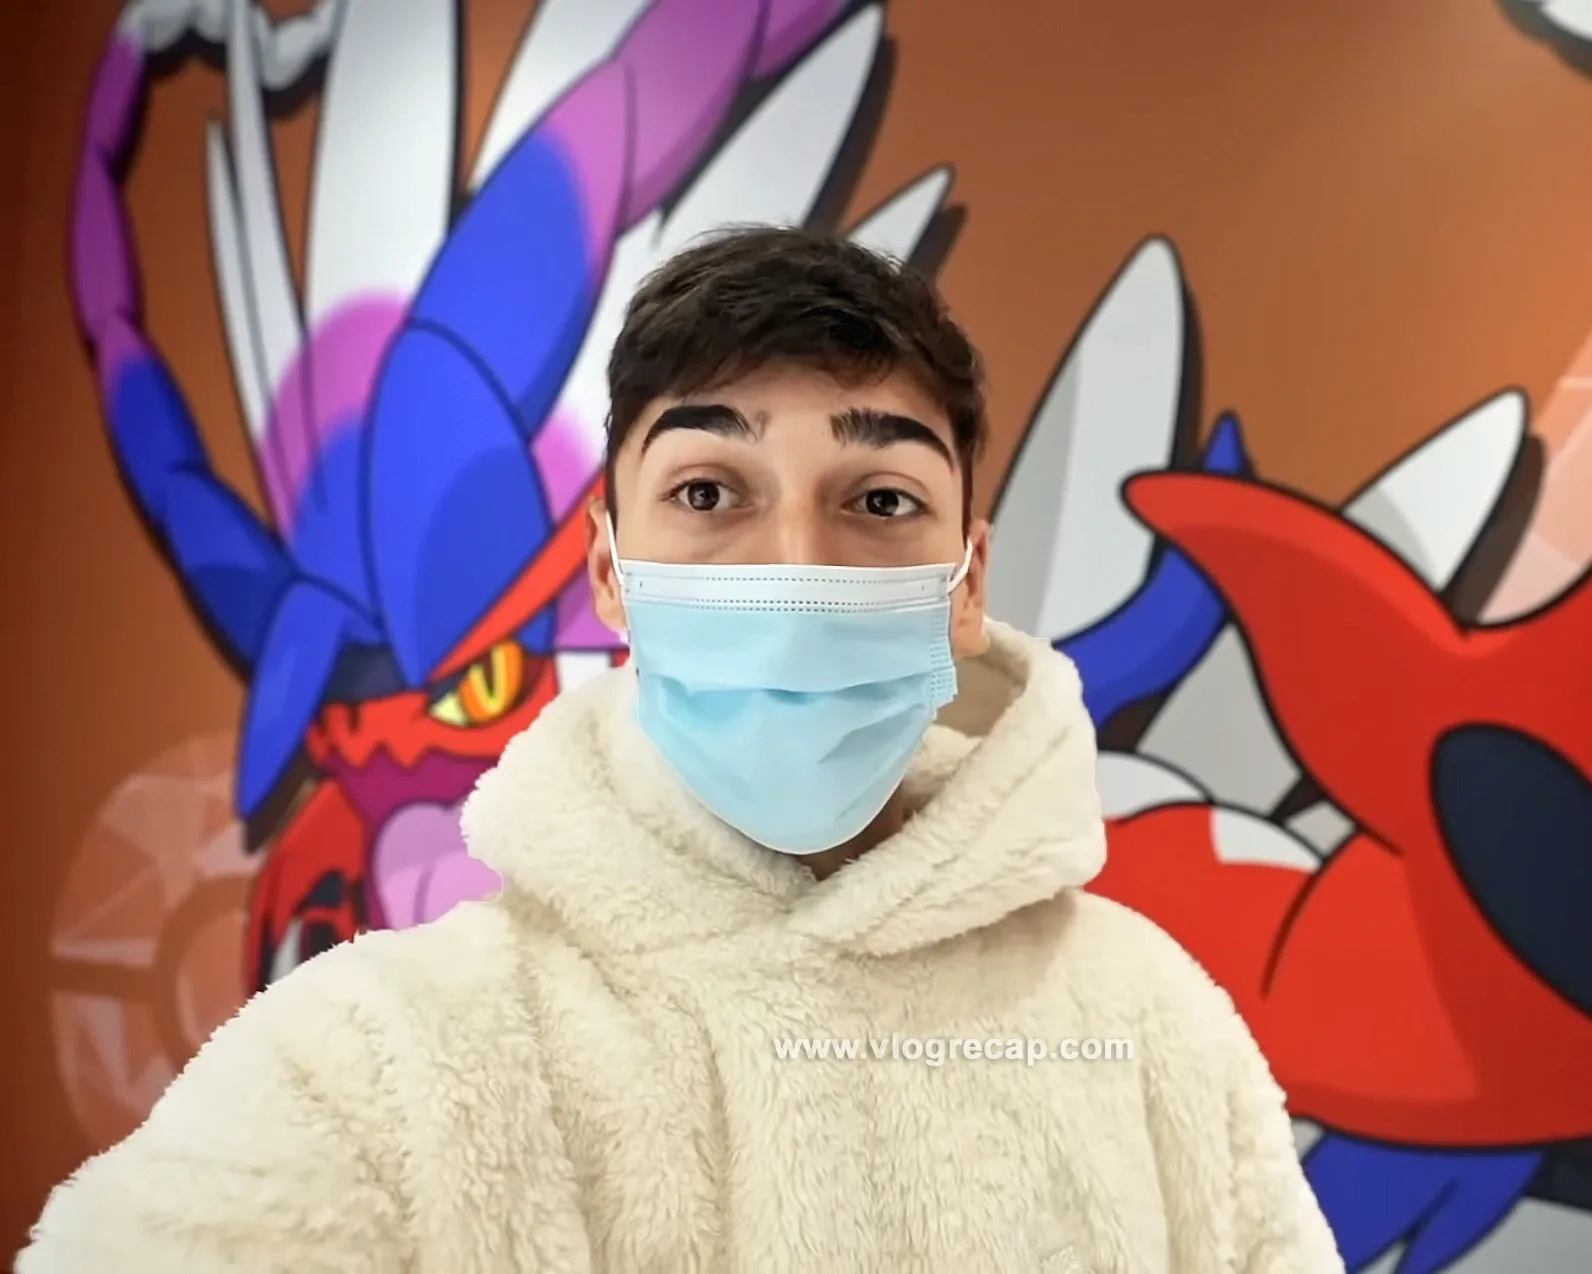 JoJo’s World: Finding Pokémon Cafe